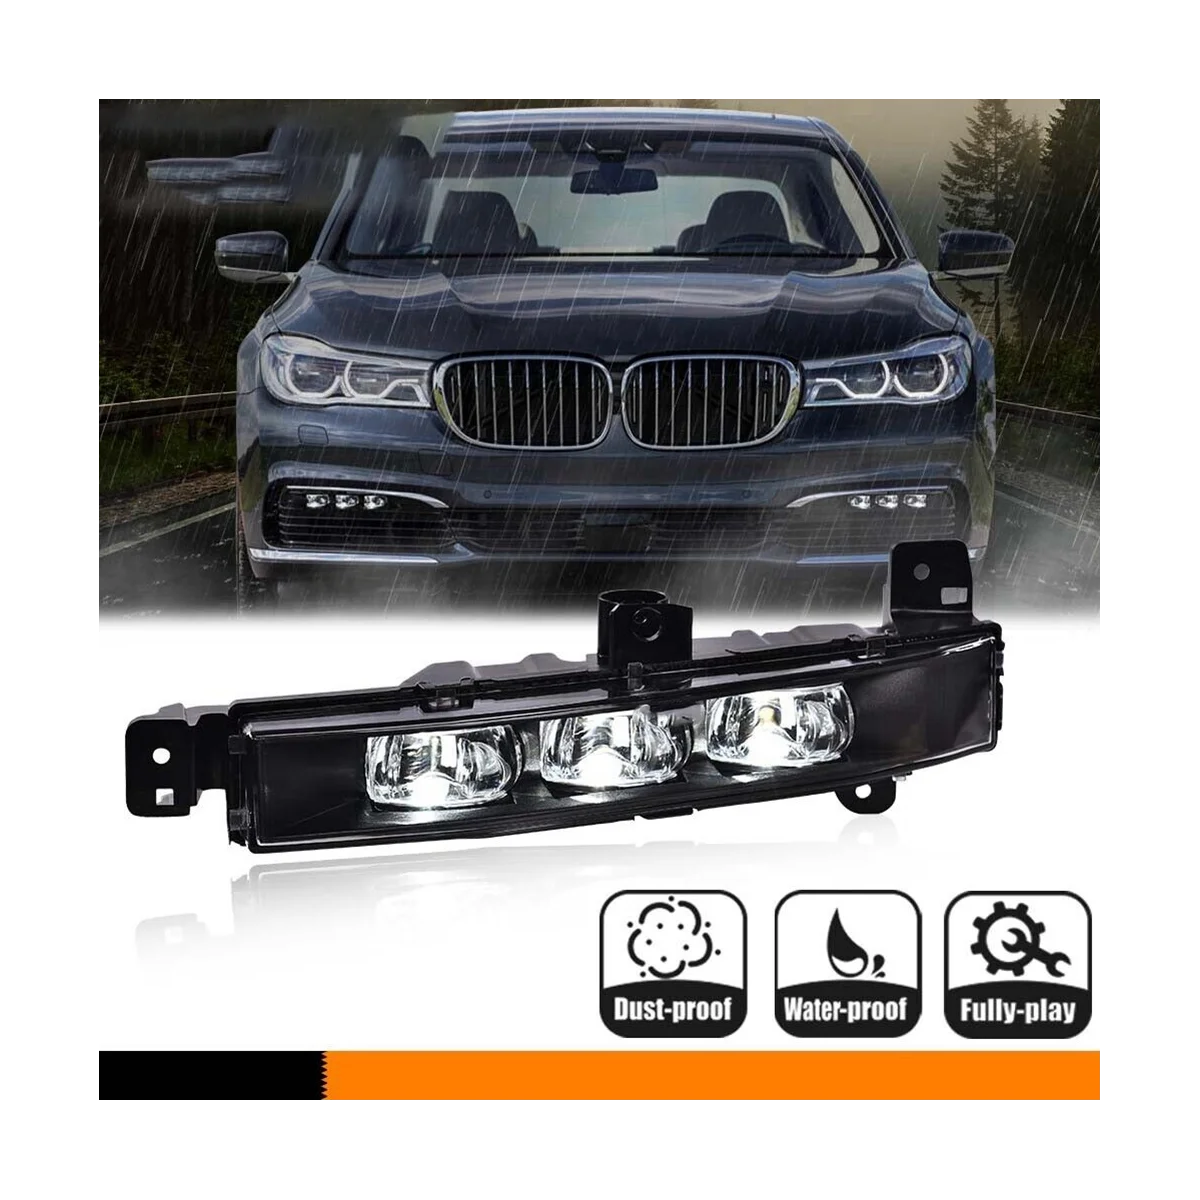 

Car Left and Right LED Fog Lamp Driving Lamp Daytime Running Light for BMW G11 G12 740I 750I 63177342953 63177342954